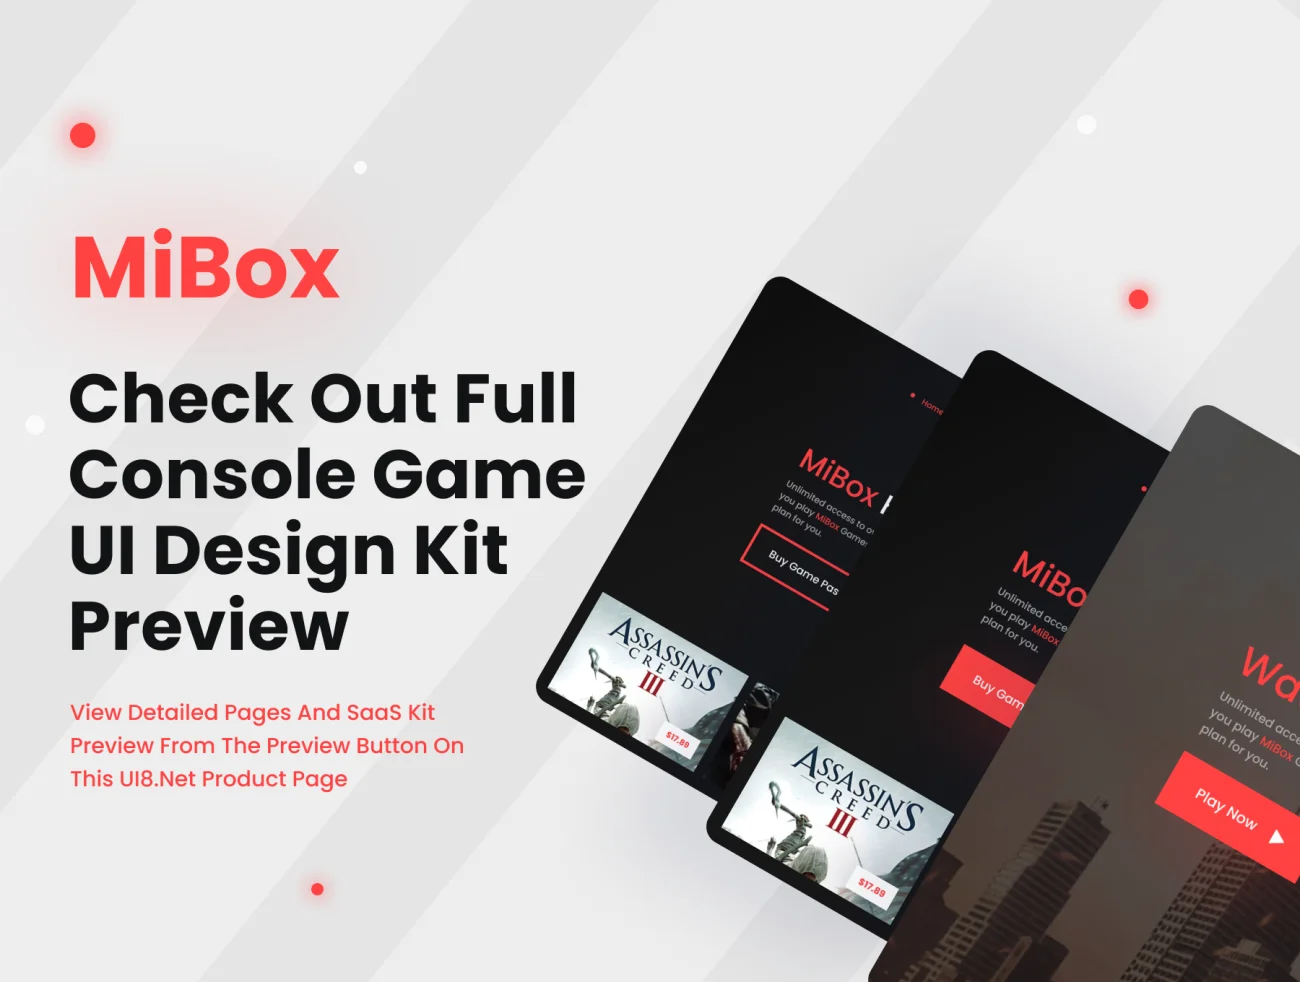 10屏游戏控制平台UI设计套件 MiBox - A Console Game Platform UI Design Practice Kit .figma-UI/UX、ui套件、主页、介绍、付款、卡片式、应用、社交、网站、详情-到位啦UI